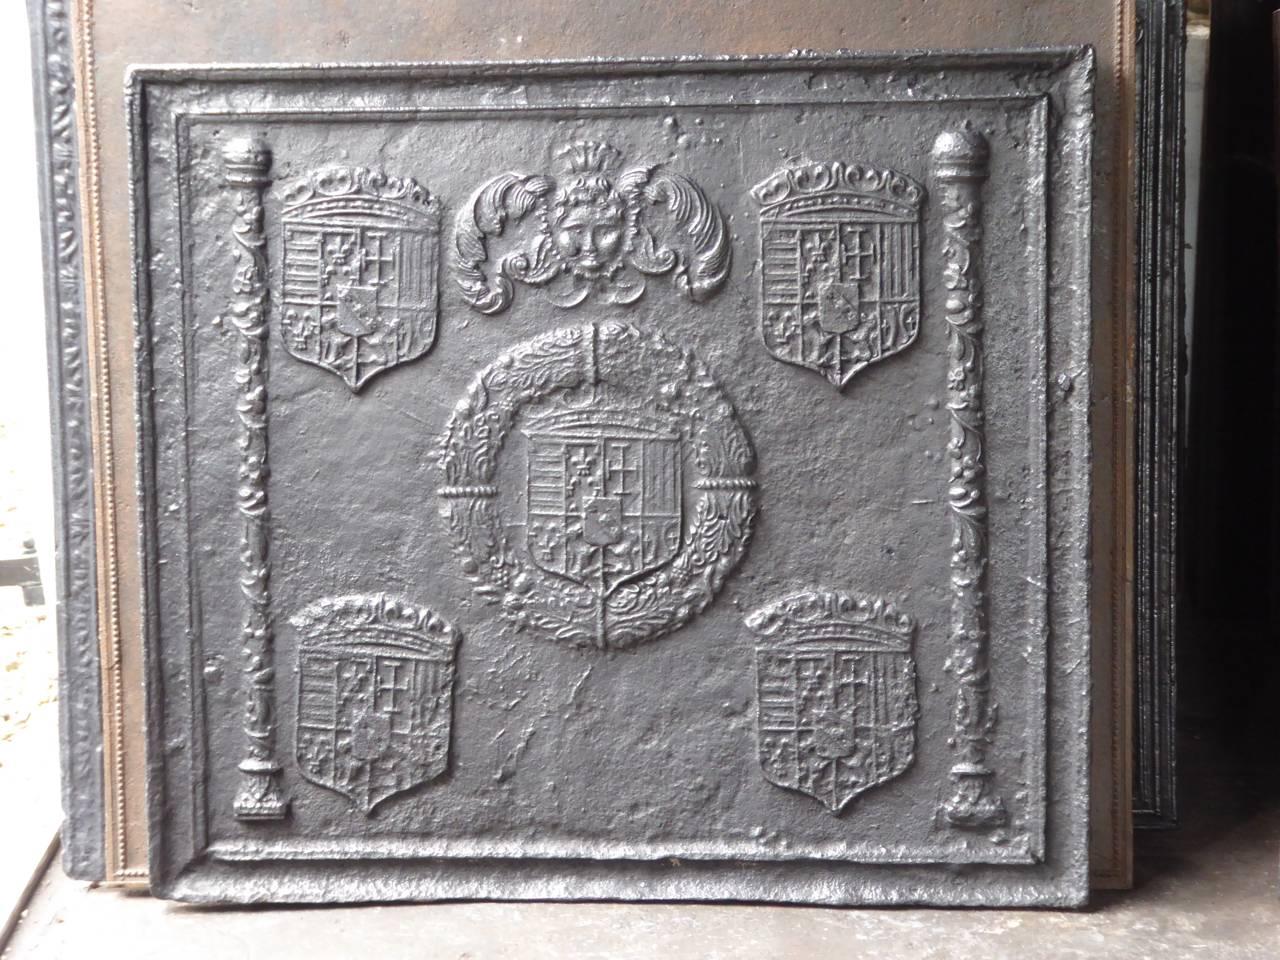 Plaque de cheminée des XVIe et XVIIe siècles avec les armoiries de Lorrain. Des deux côtés se trouvent les bâtons d'un Marshall. Cela indique que cette plaque a été fabriquée pour un haut responsable militaire de l'époque. La plaque de cheminée est